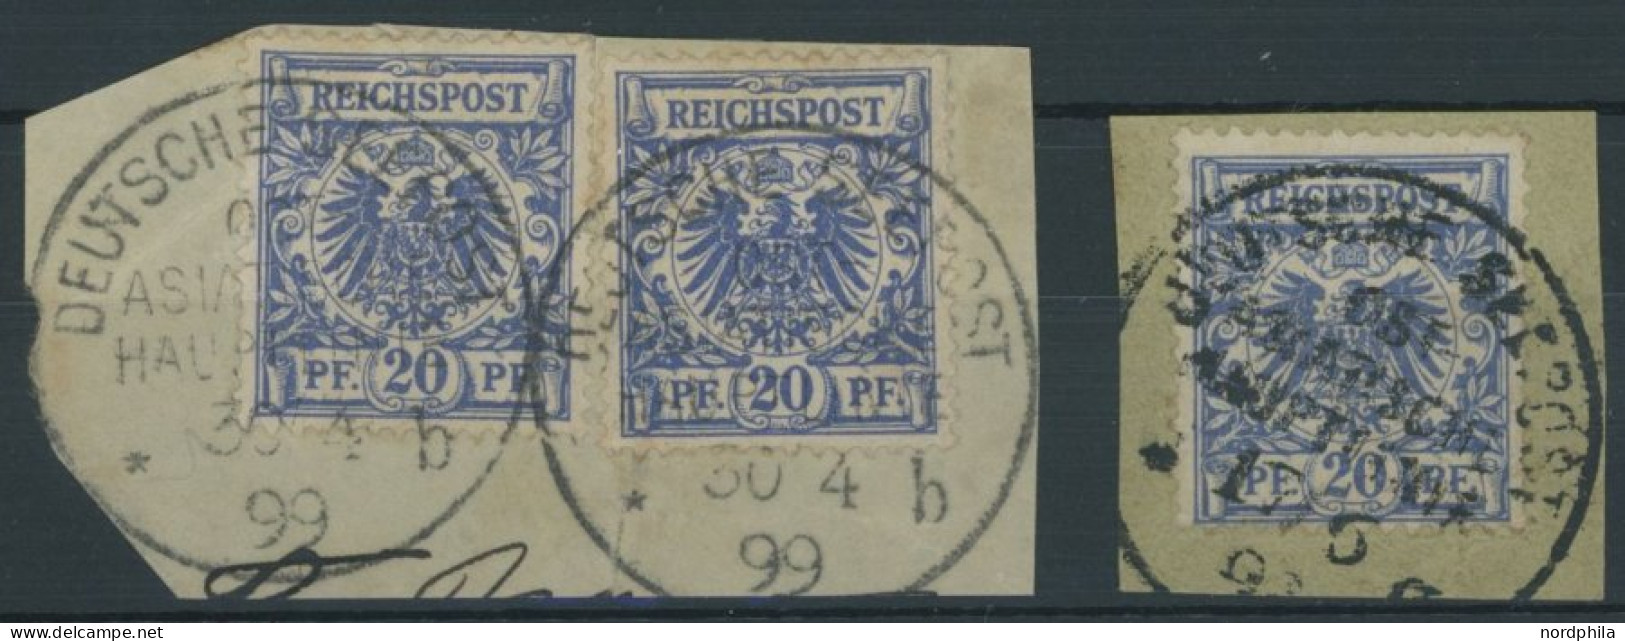 DEUTSCHE SCHIFFSPOST DR 48d BrfStk, 1899, OST ASIATISCHE HAUPTLINIE, 2 Briefstücke, Feinst/Pracht, Gepr. Steuer - Maritiem